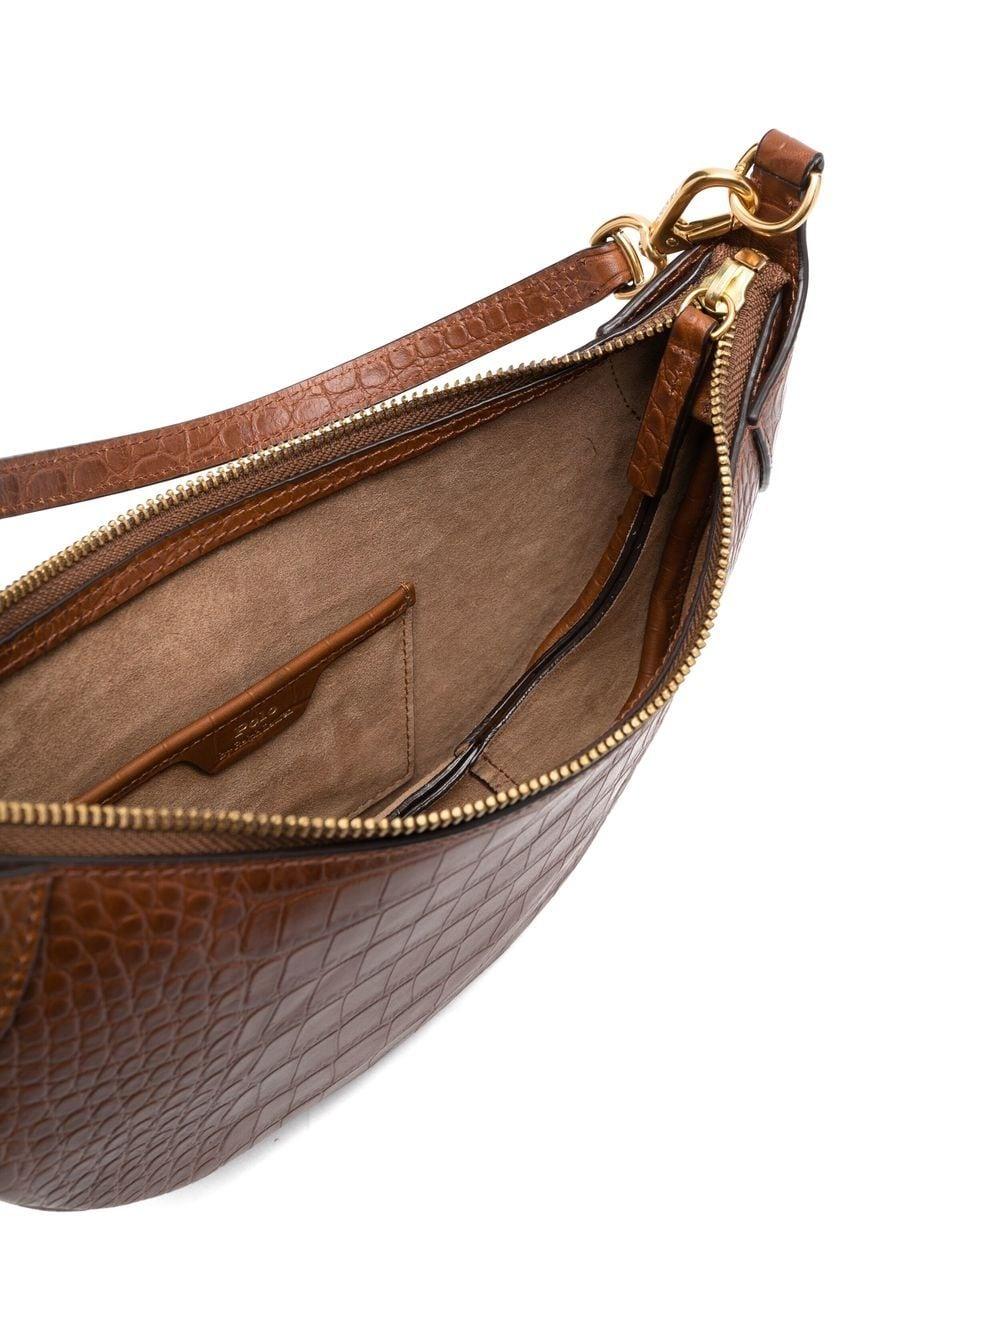 Ralph Lauren Handbag, Brown Suede, Croc Embossed Leather Handbag